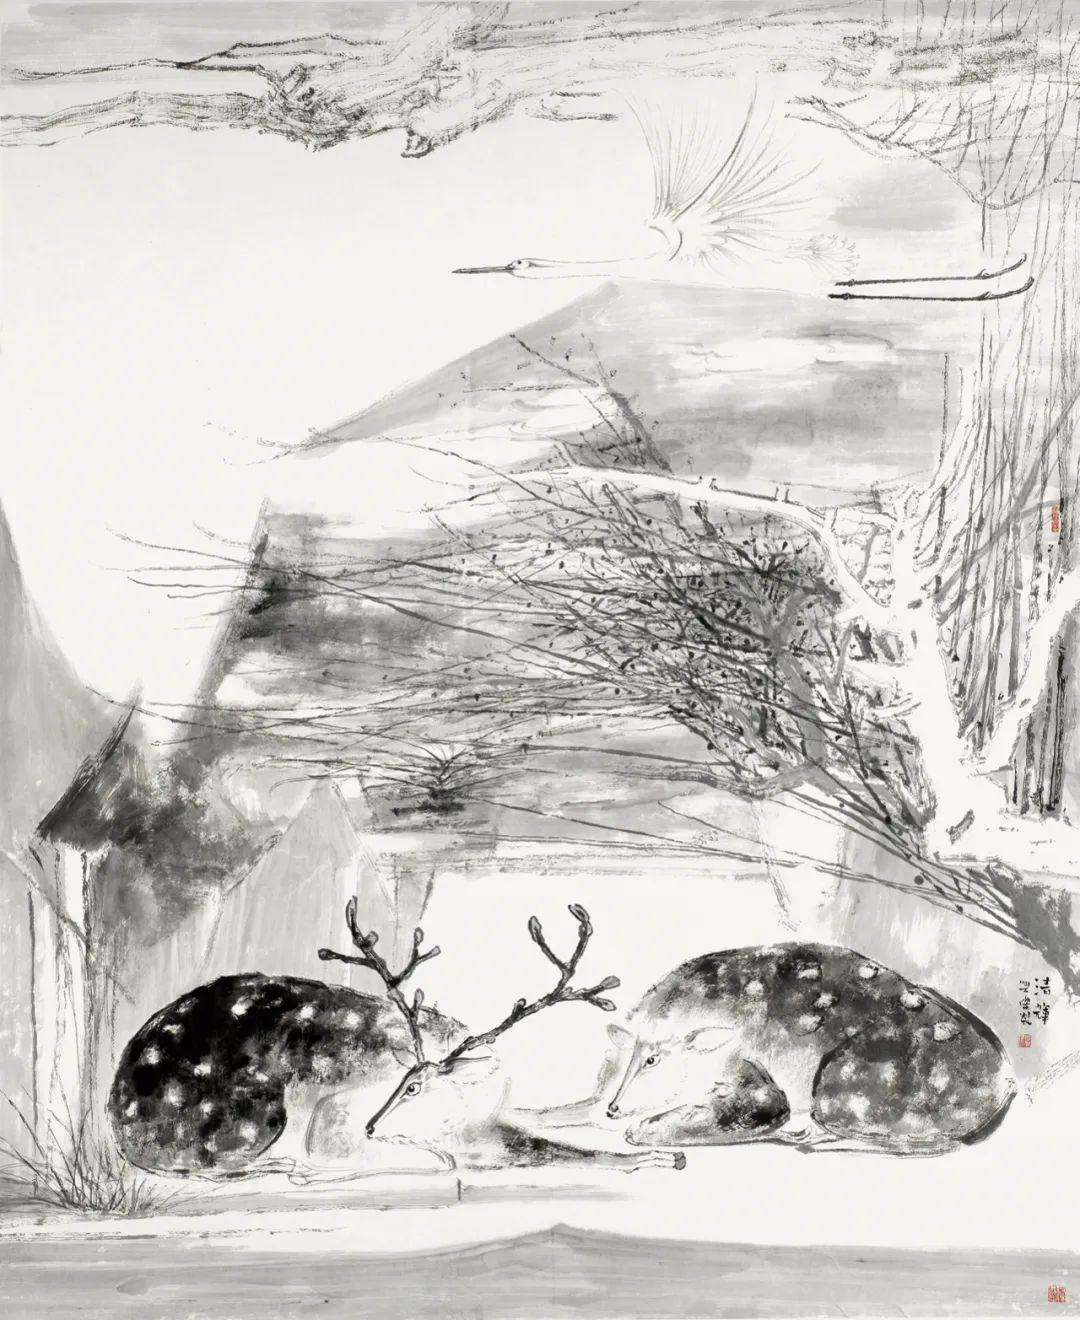 呦呦鹿鸣  食野之苹——青年画家李兴杰作品中的诗性与梦境